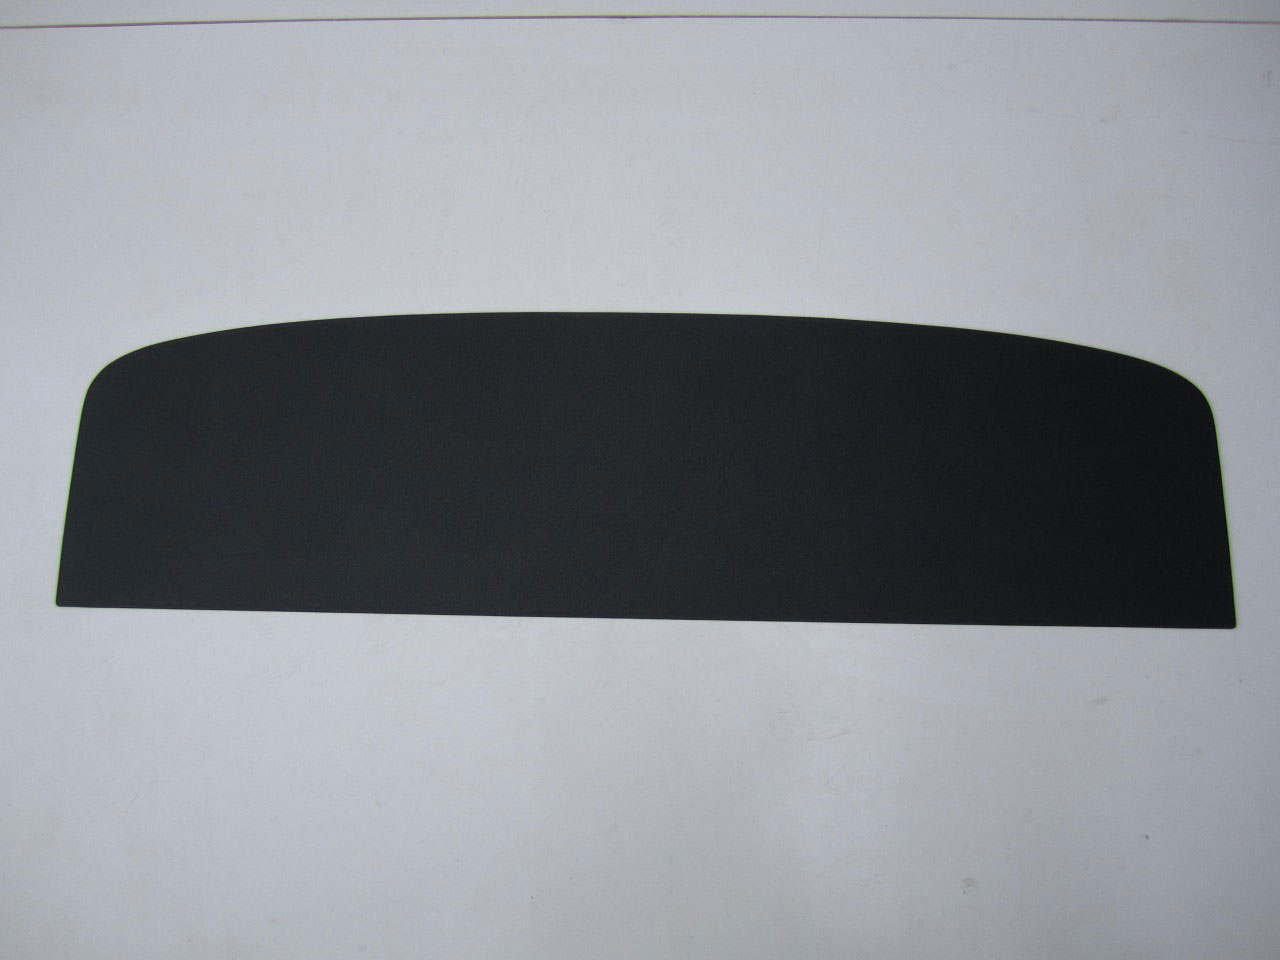 Holden Monaro HK Monaro GTS Coupe 18Y Parchment & Black Parcel Shelf (Image 1 of 1)